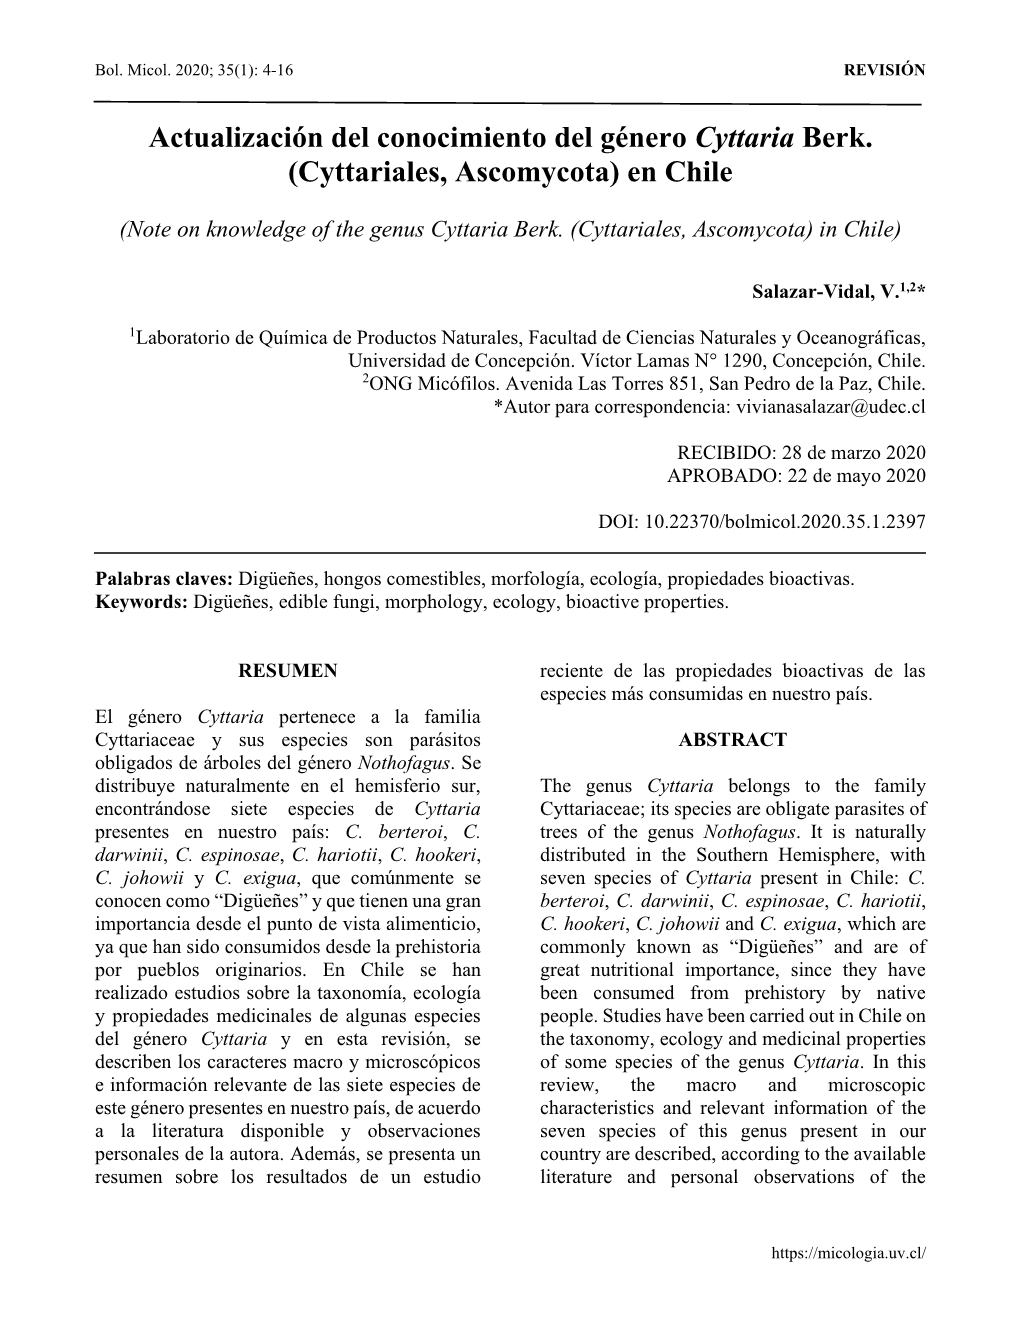 Actualización Del Conocimiento Del Género Cyttaria Berk. (Cyttariales, Ascomycota) En Chile